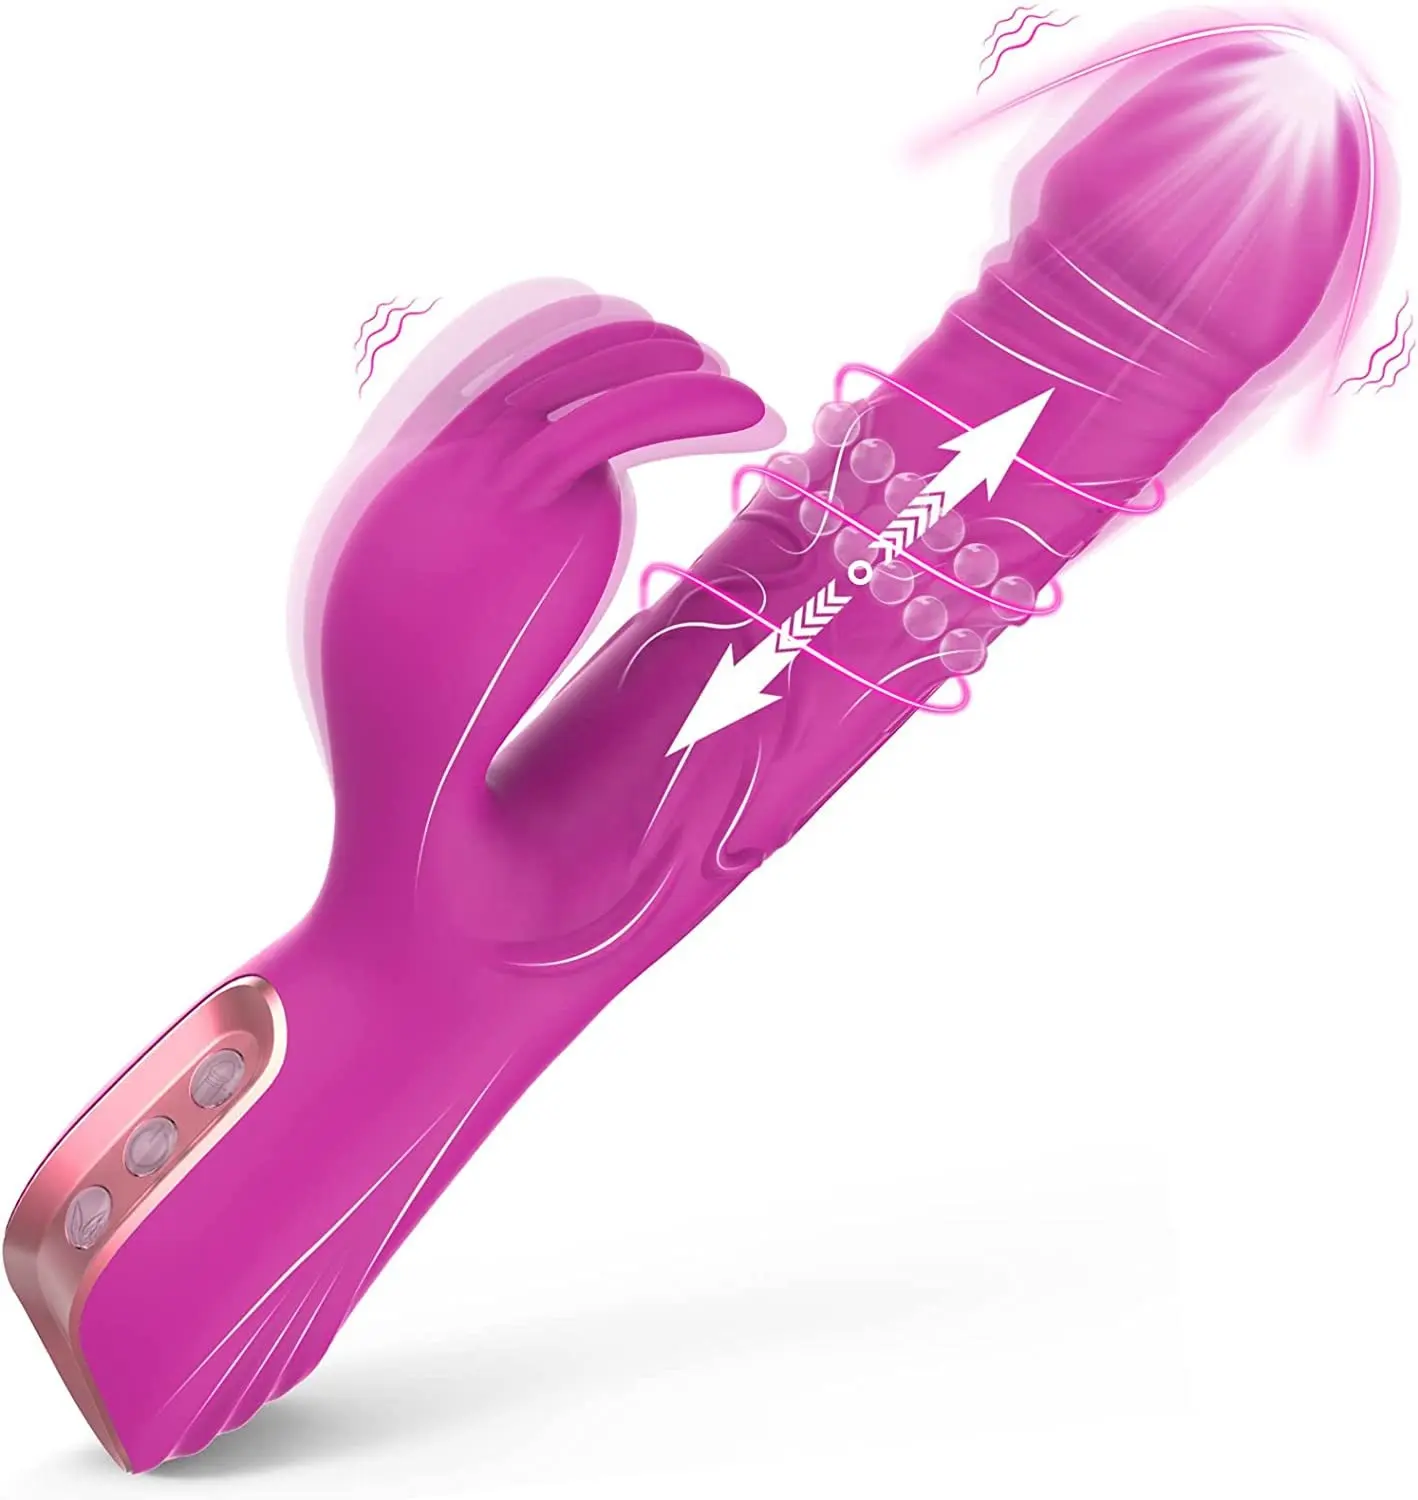 Metal Beads Rotating Vibrating Clitoris Stimulator Vagina Massager Sex Toys G Spot Rabbit Vibrators